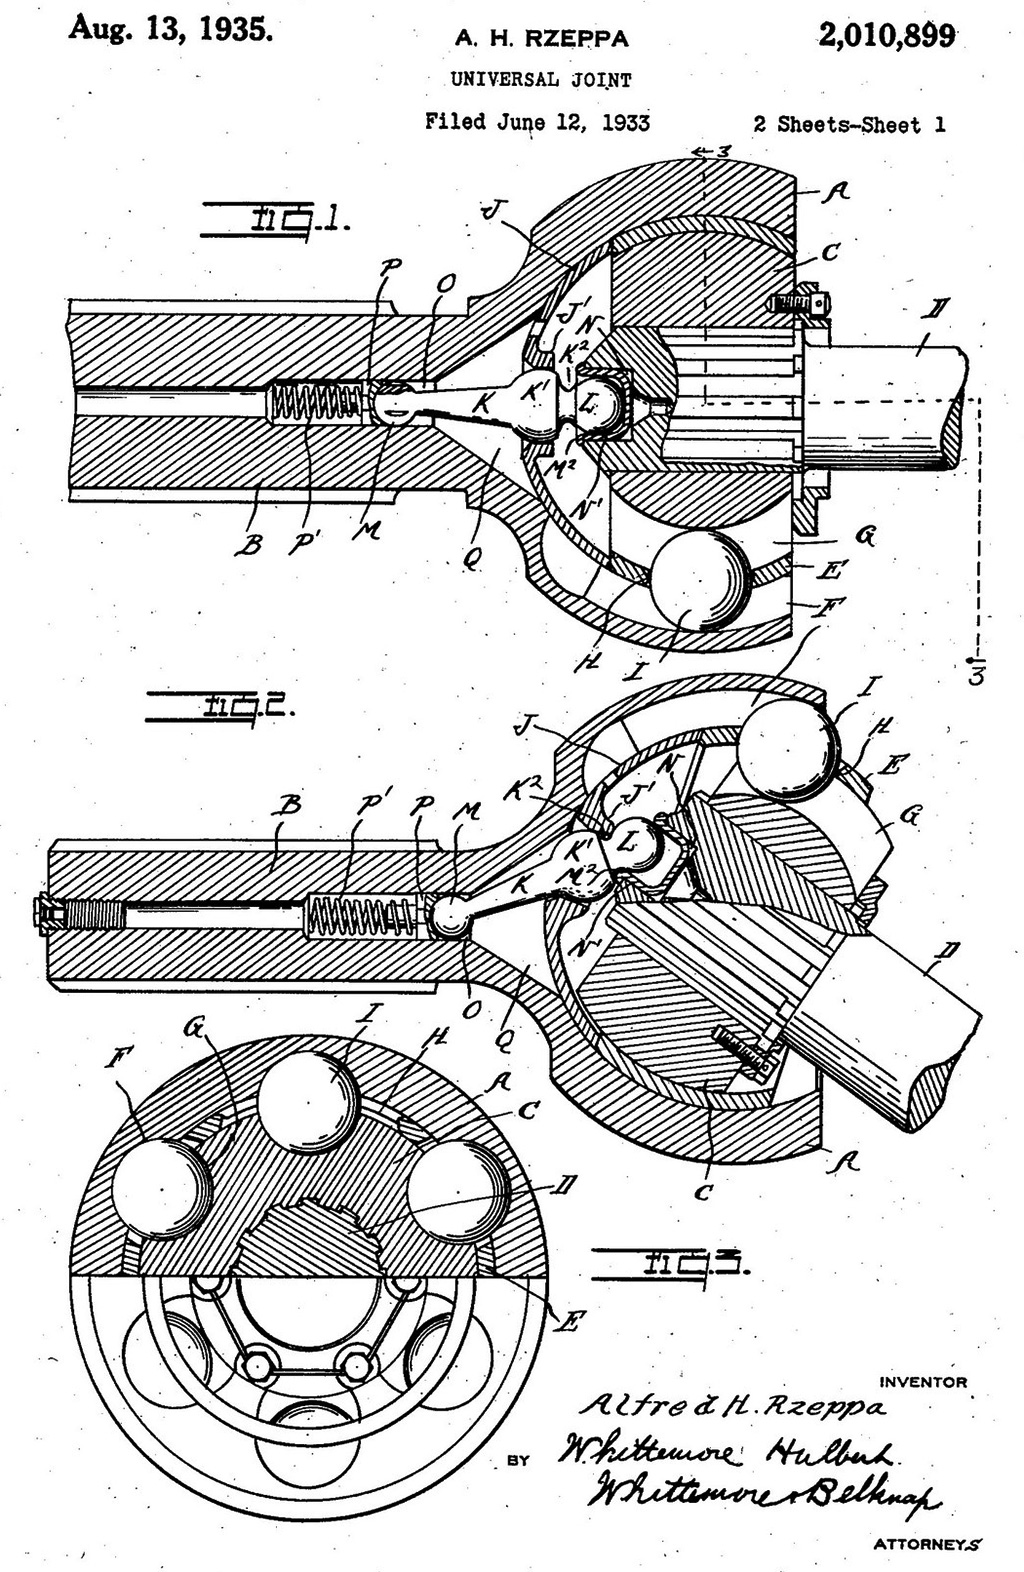 Патент США № 2010899, выданный 13 августа 1935 года Альфреду Шеппе на шарнир равных угловых скоростей.